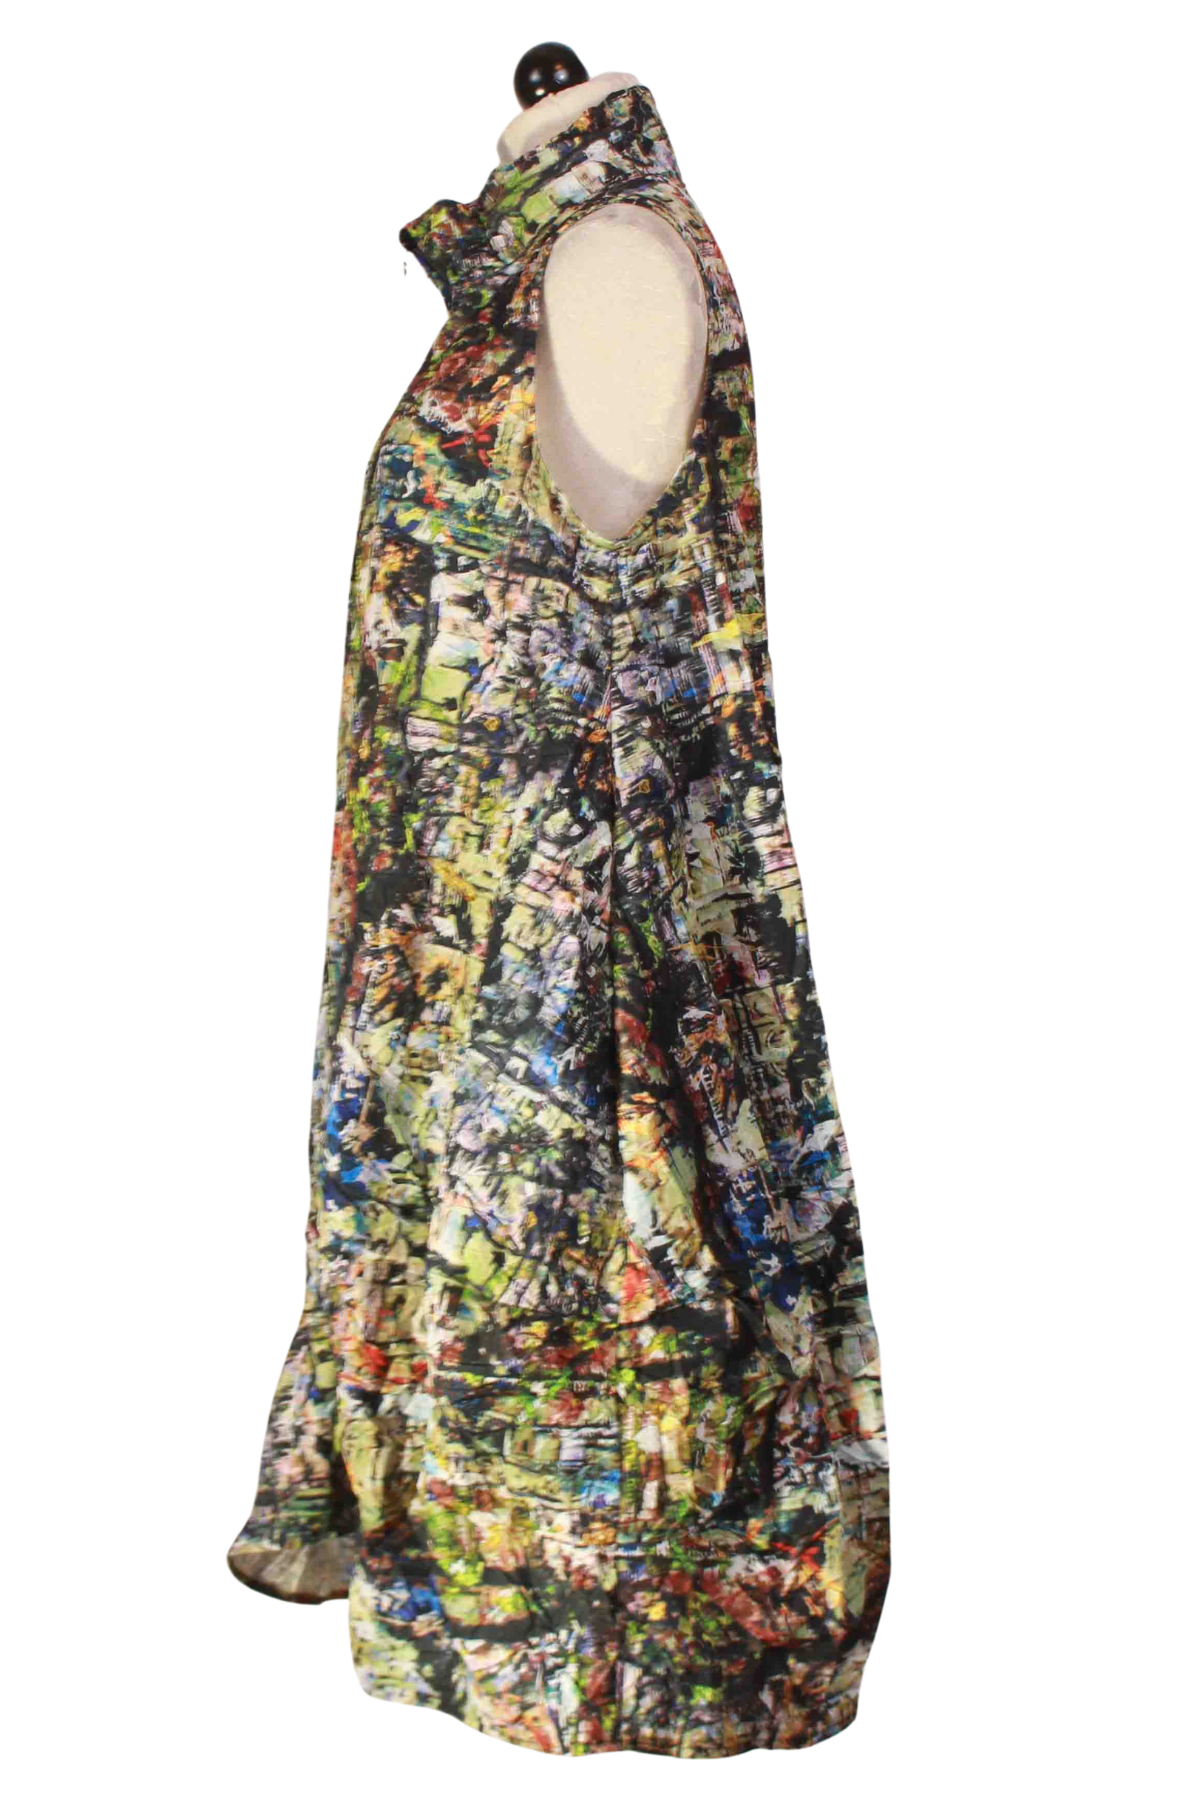 side view of Aubrey City Print Dress by Kozan